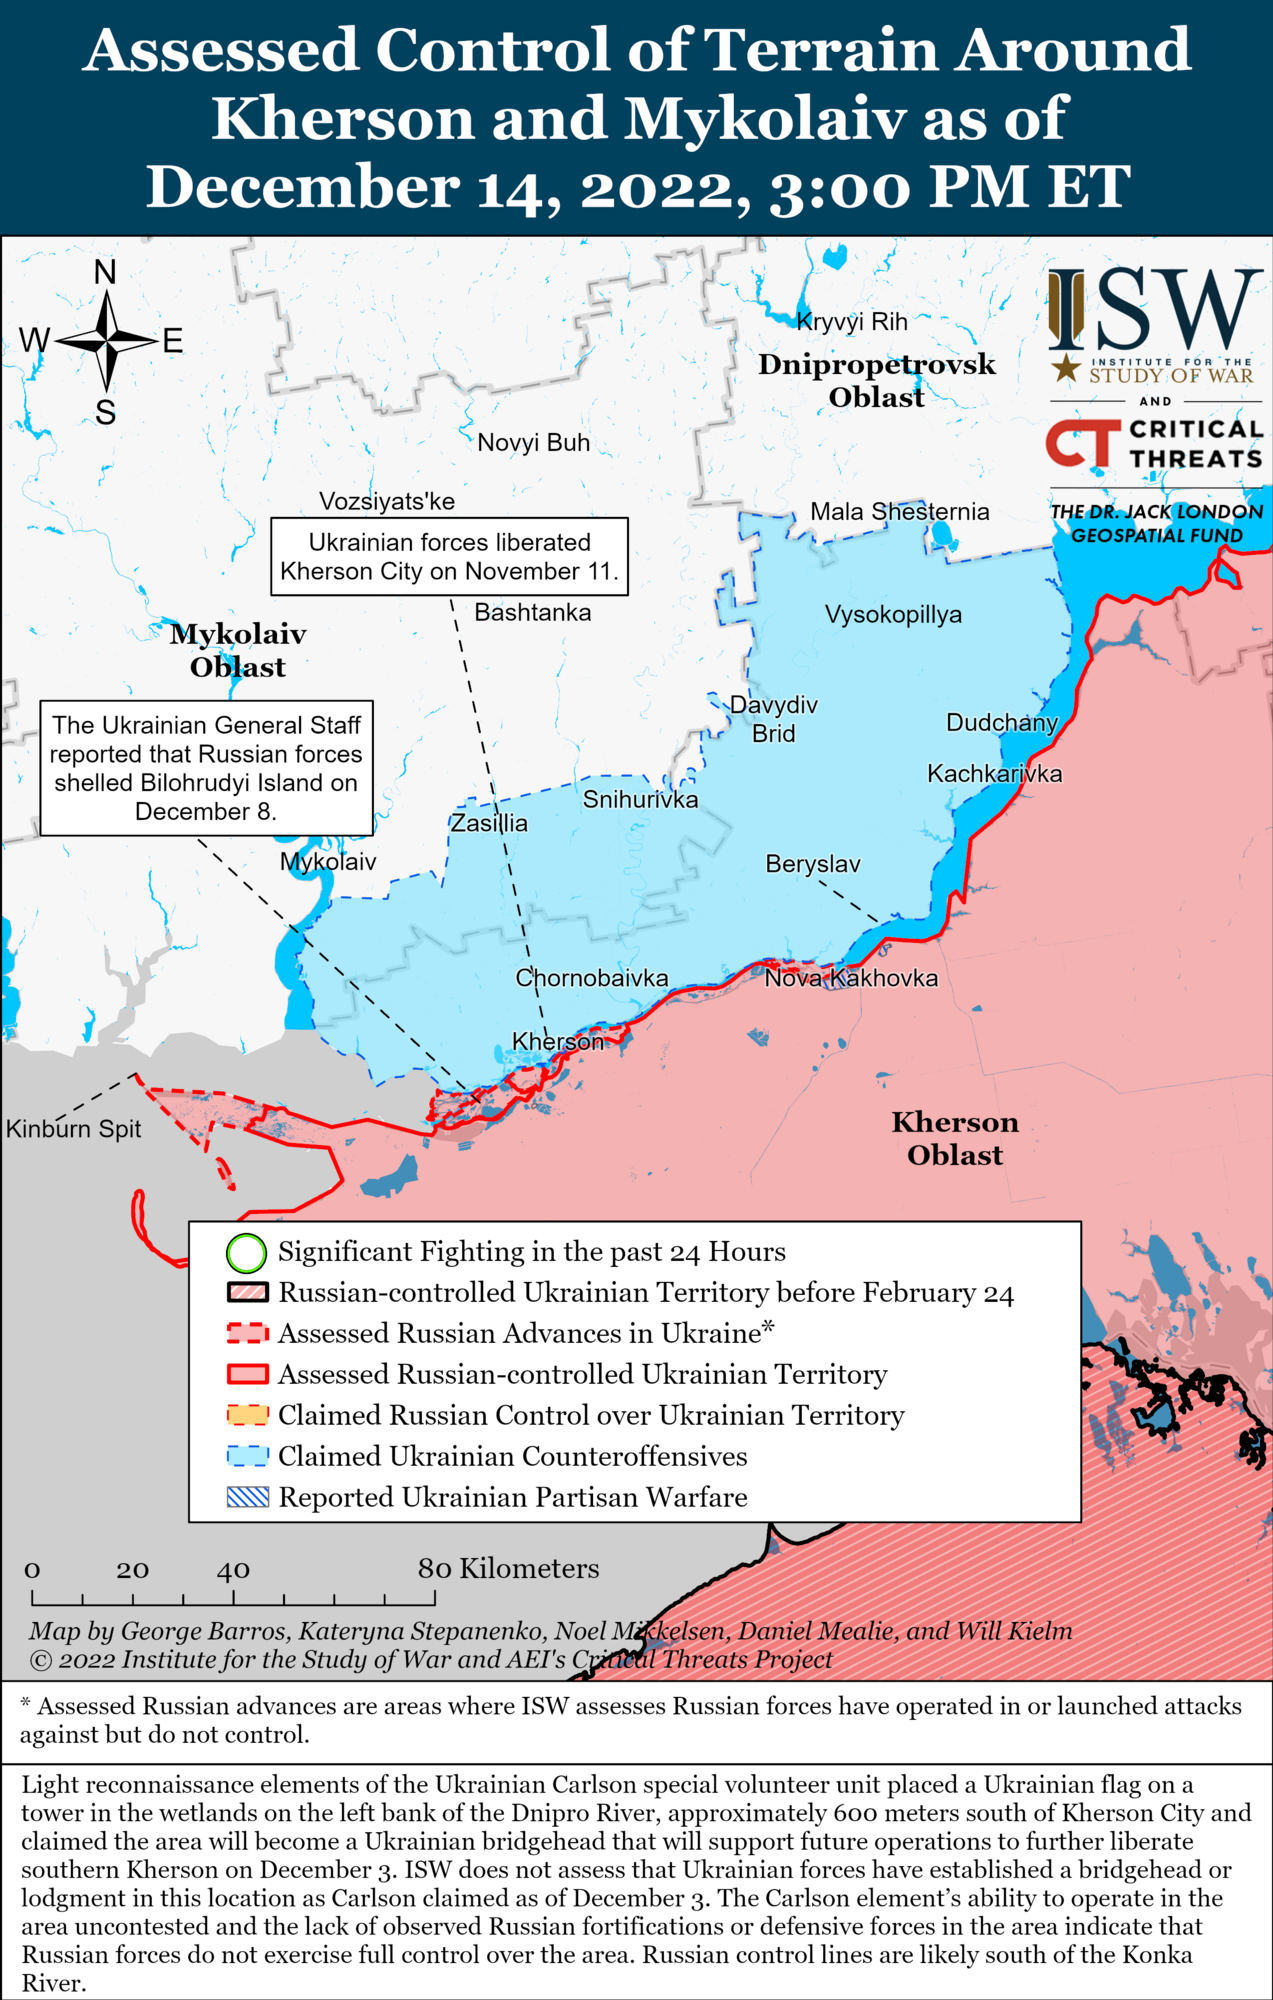 Войска РФ могут устроить новое масштабное наступление на Украину: в ISW назвали ключевые направления